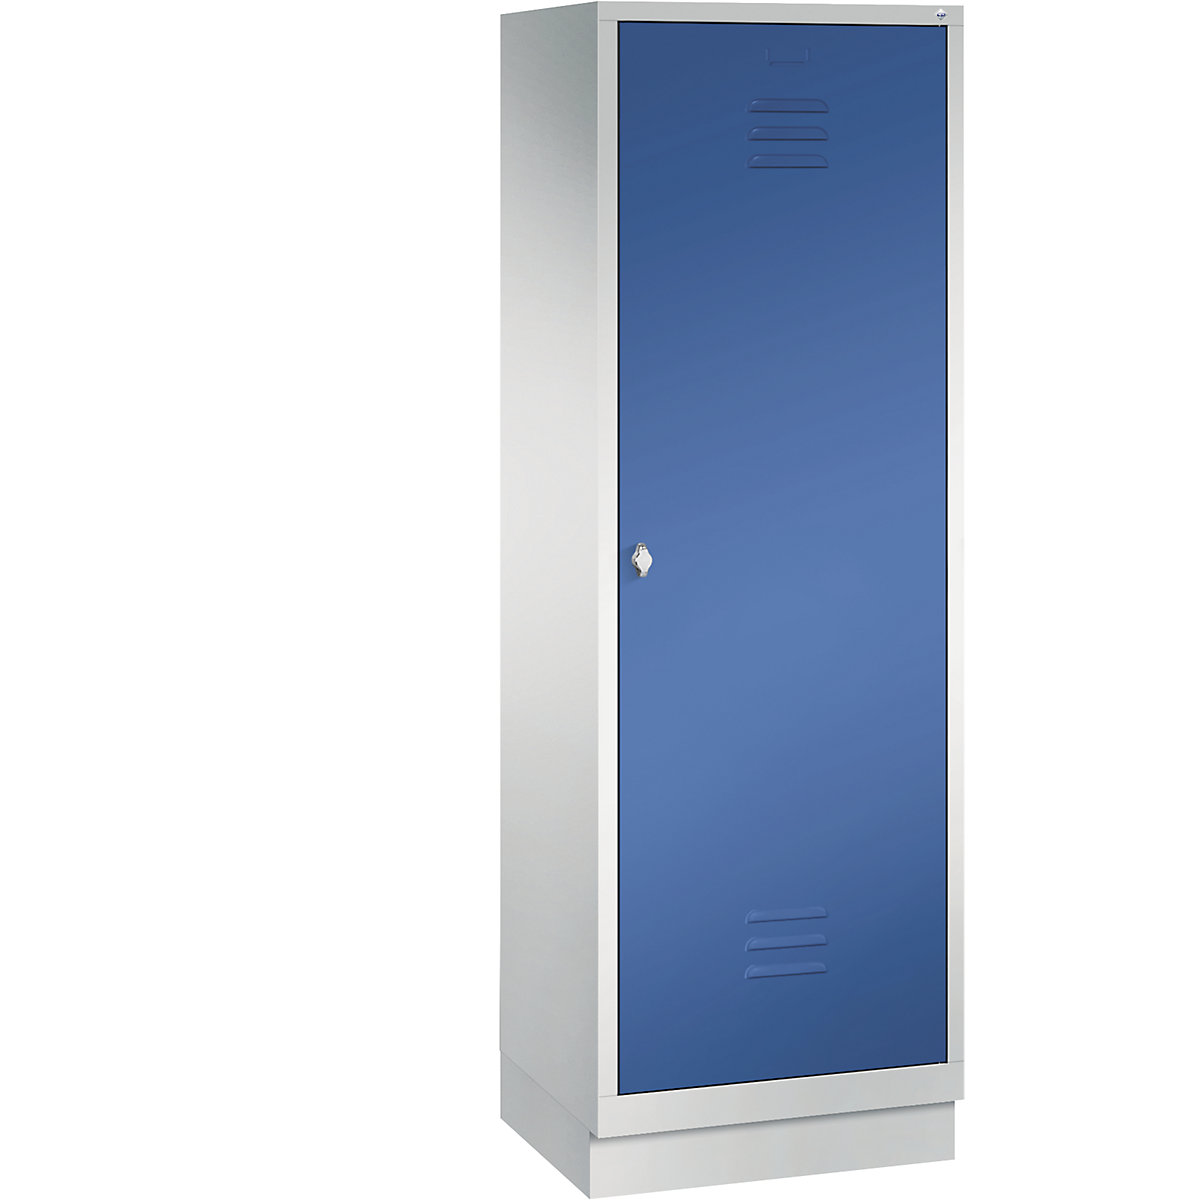 Šatní skříň se soklem CLASSIC s dveřmi přes 2 oddíly – C+P, 2 oddíly, šířka oddílu 300 mm, světlá šedá / enciánová modrá